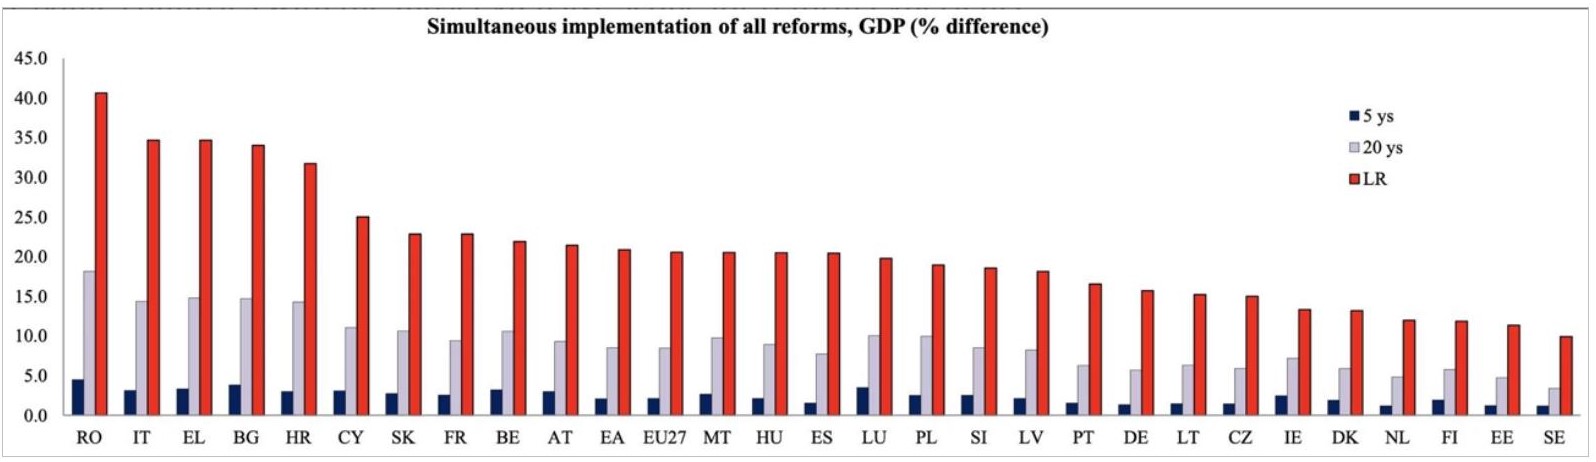 4-crecimiento-potencial-reformas-estructurales.jpg